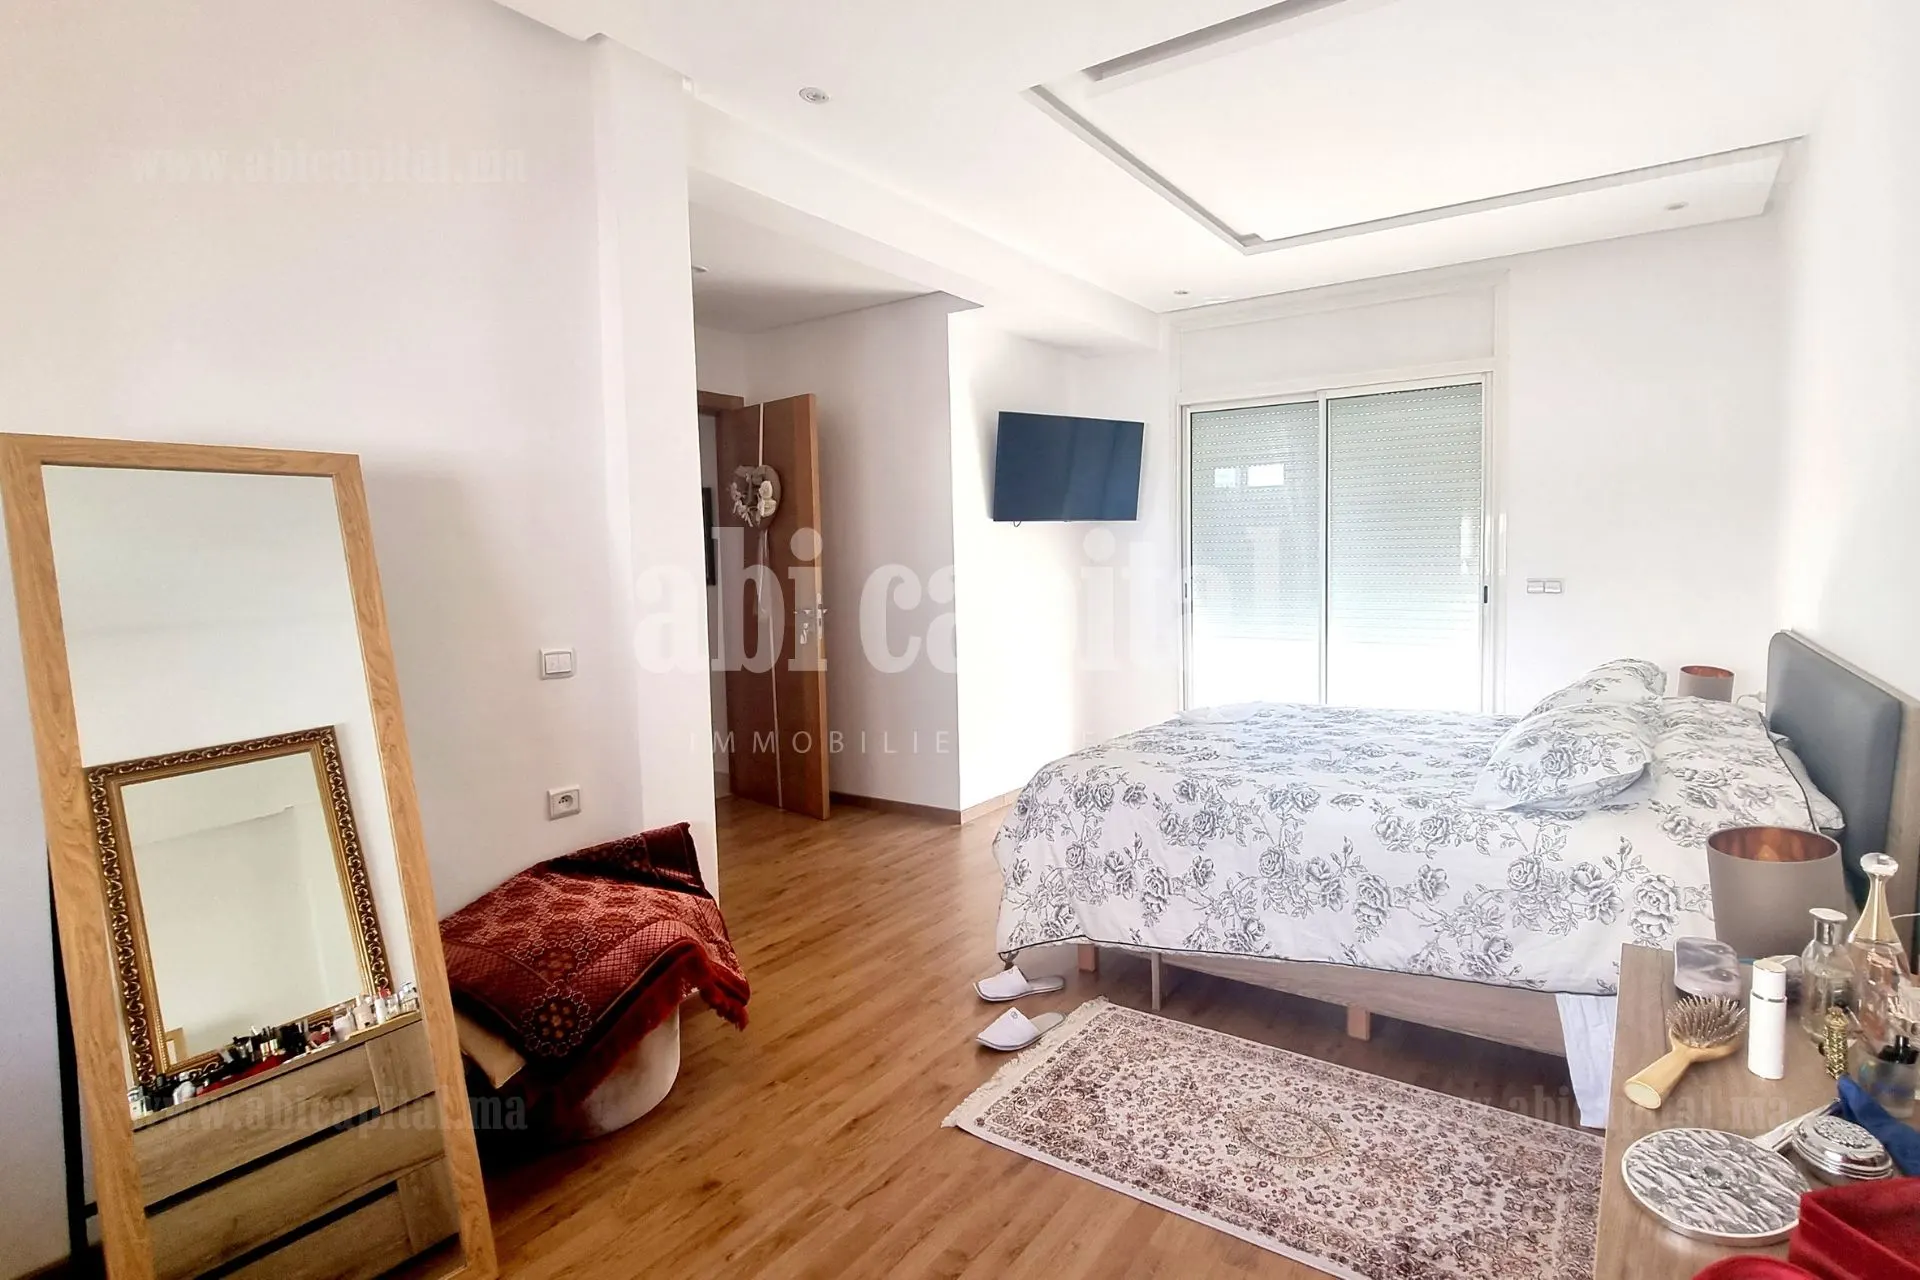 Appartement renove, Appartement en Vente Rabat Agdal  - picture 7